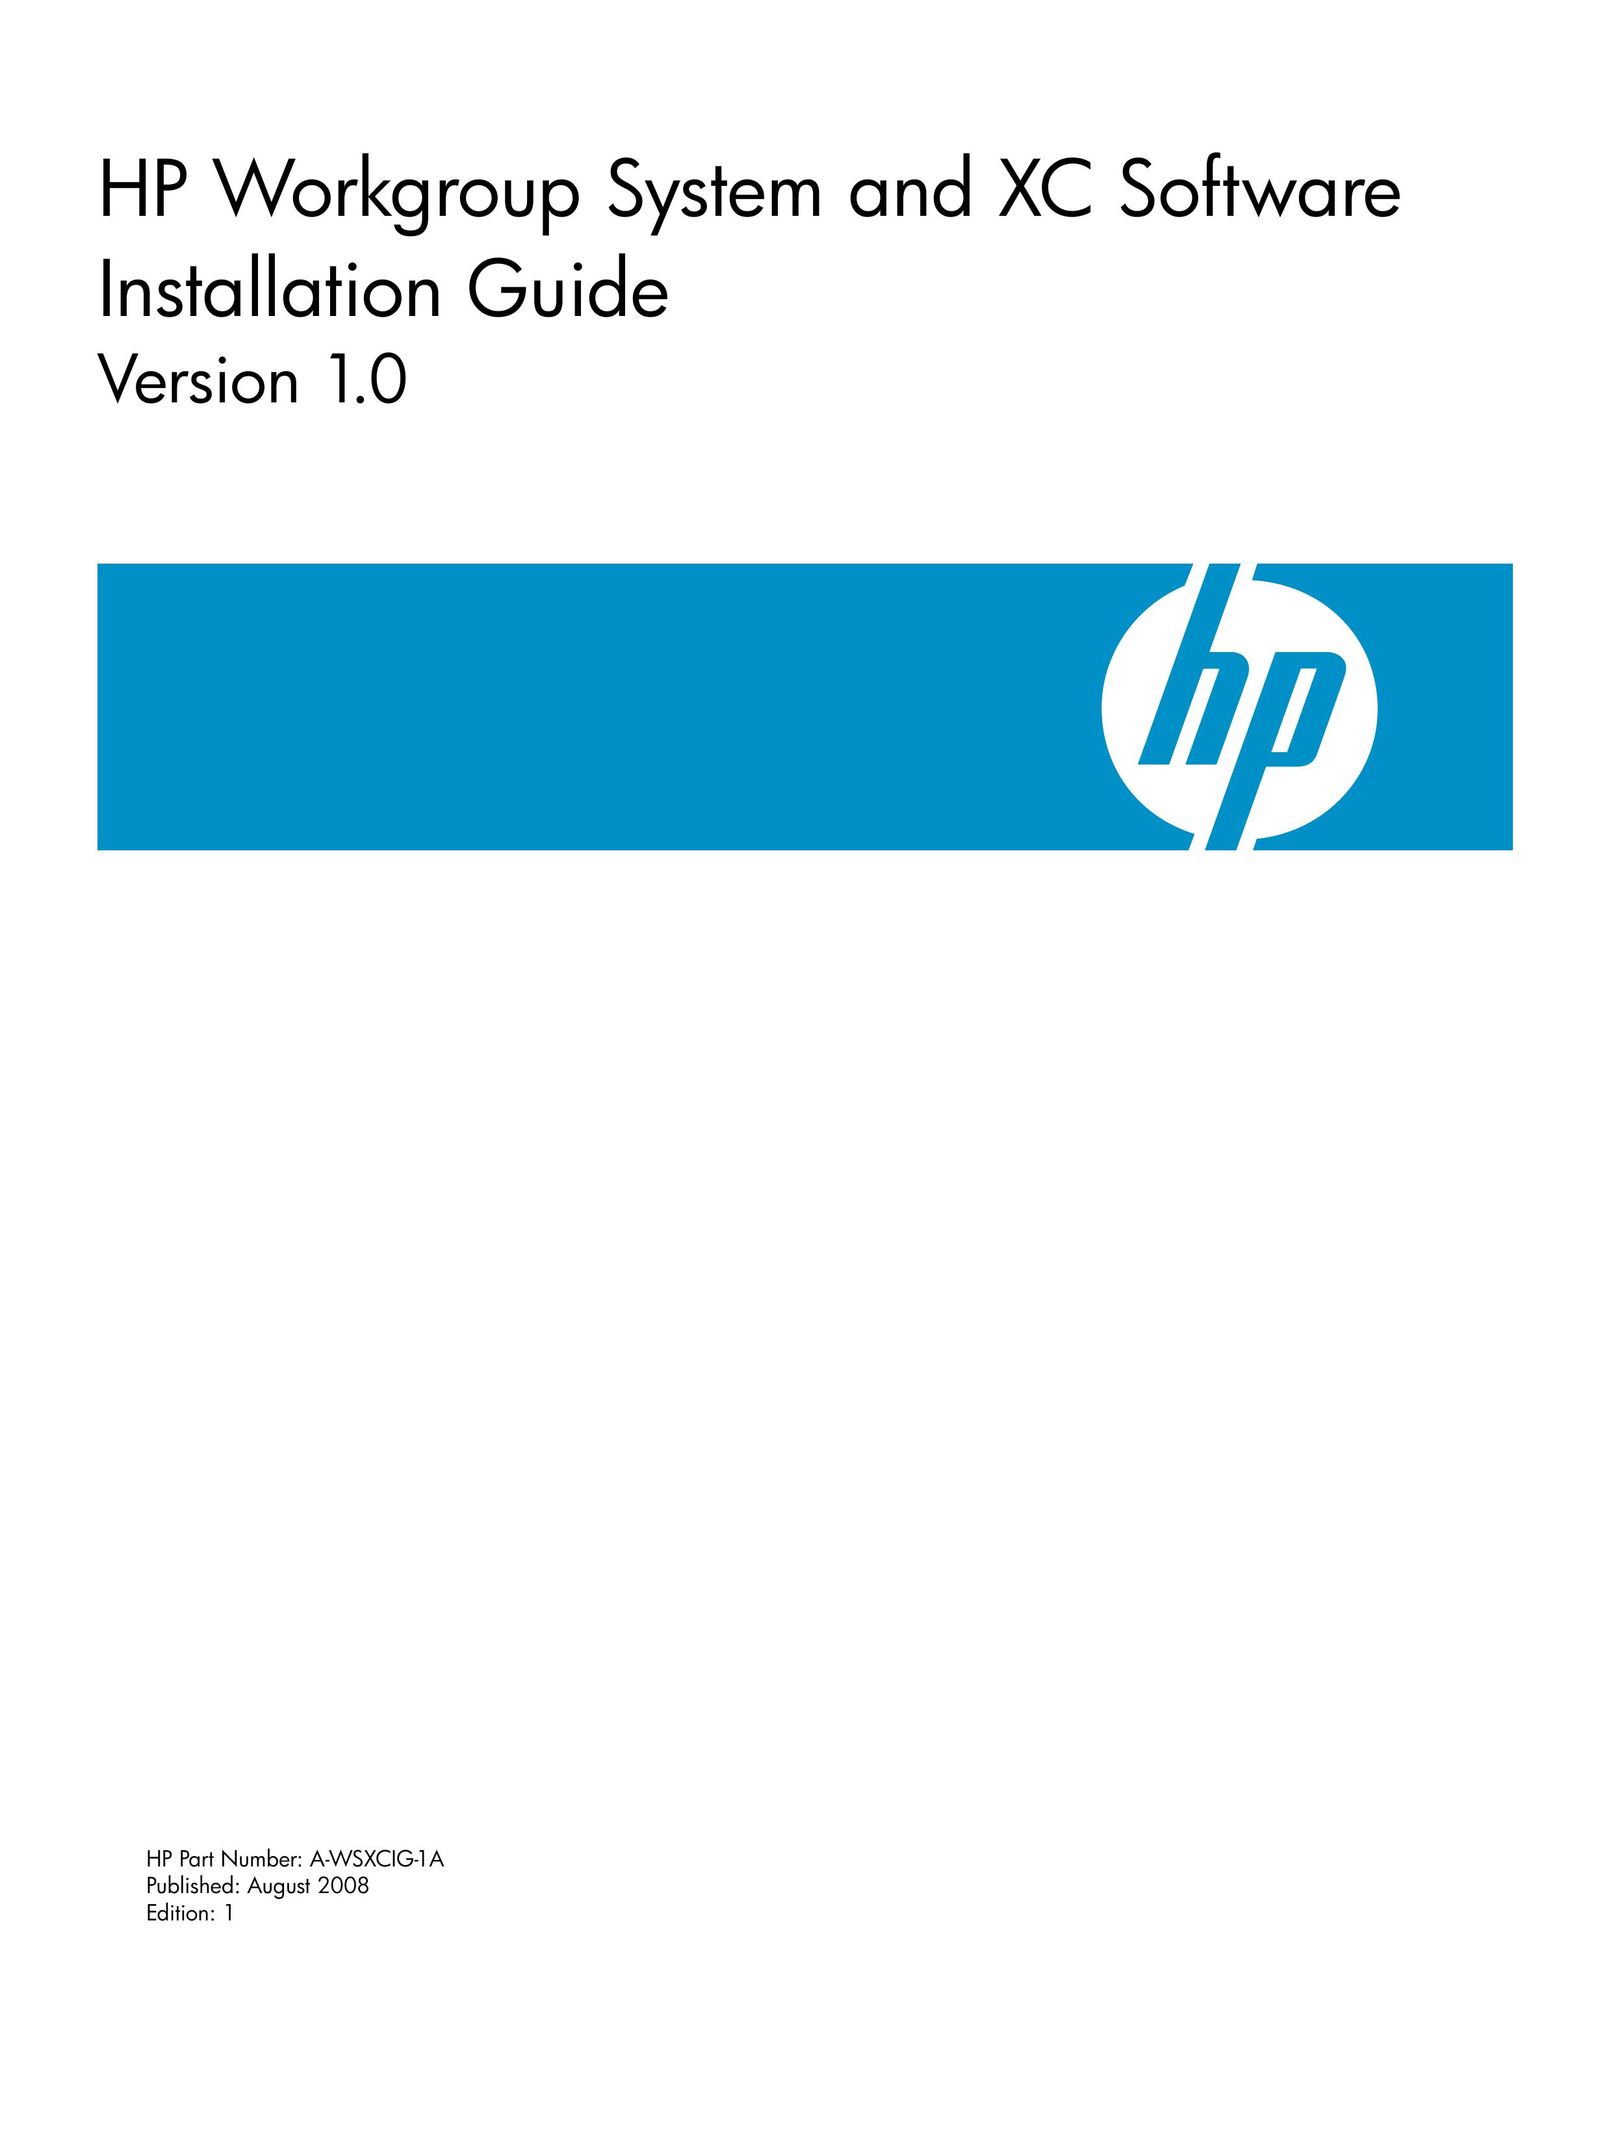 HP (Hewlett-Packard) AWSXCIG-1A Computer Accessories User Manual